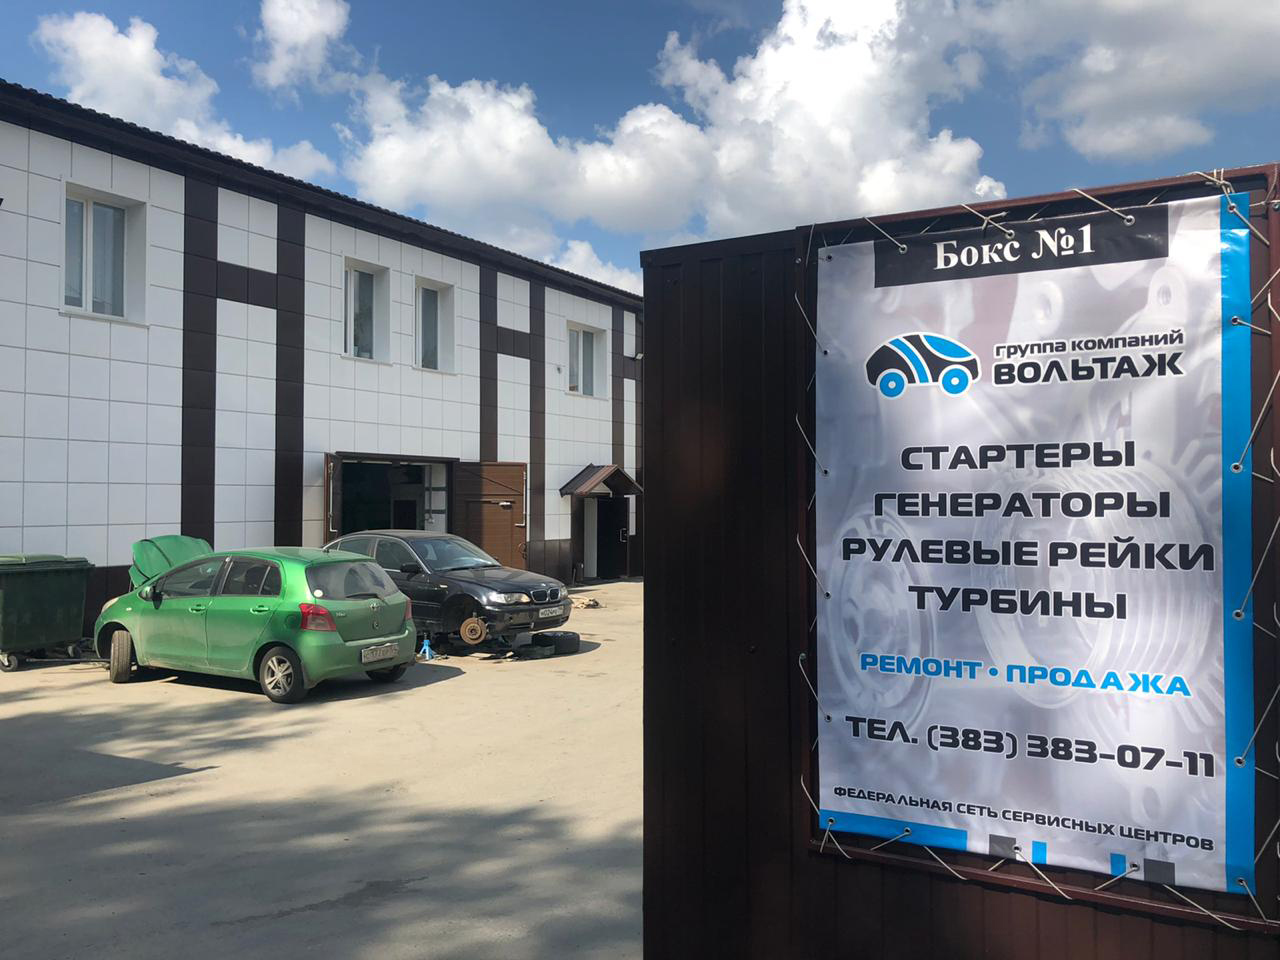 Ремонт стартеров, генераторов, рулевых реек в Новосибирске